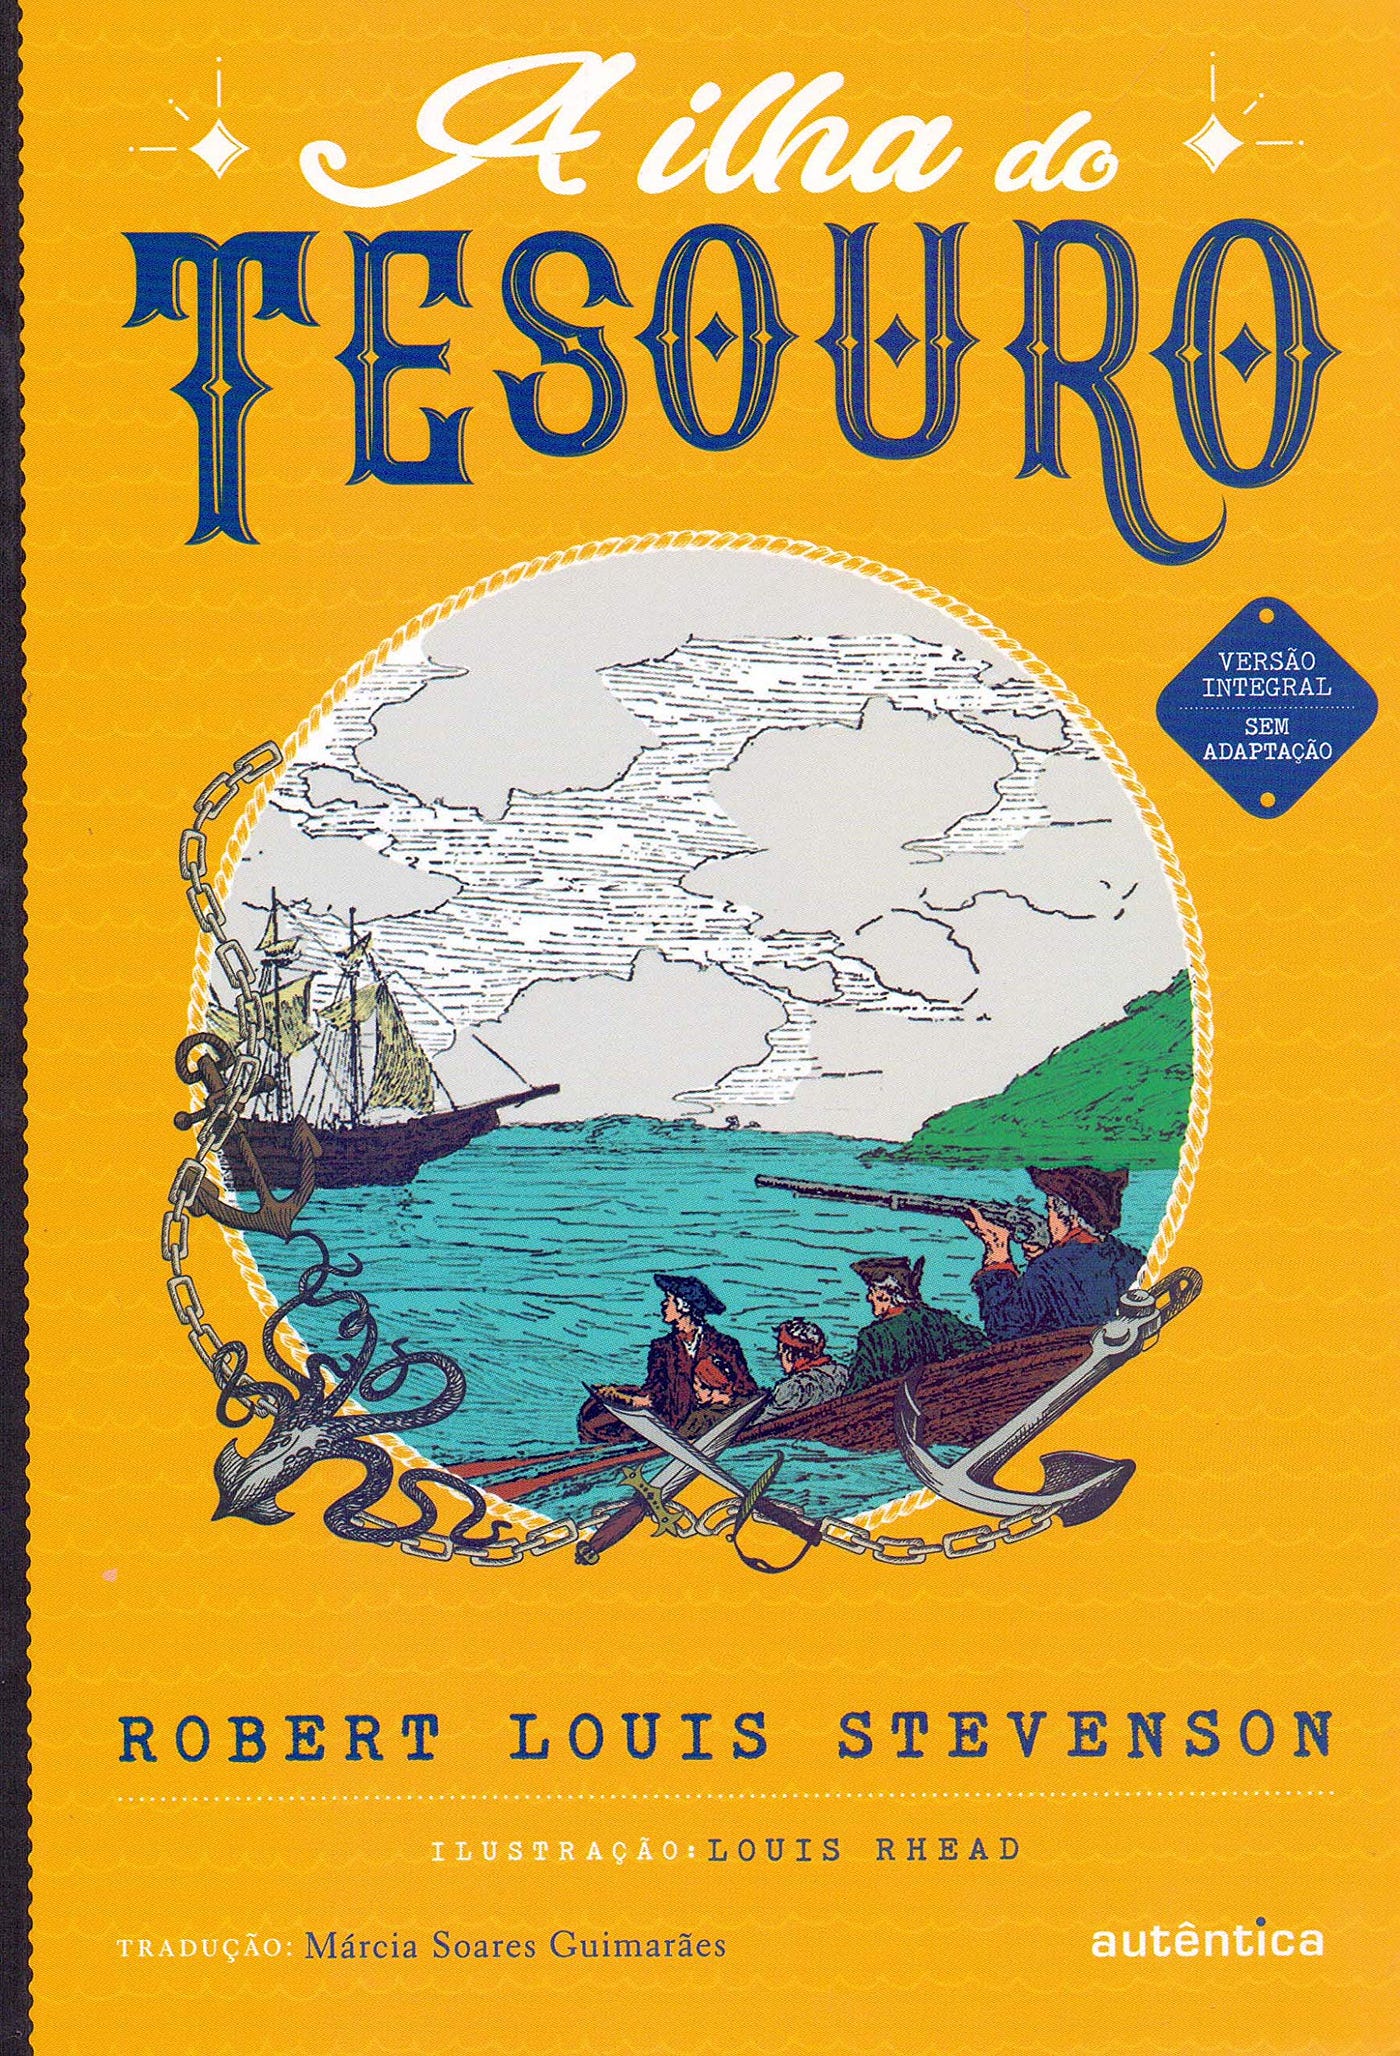 A Ilha do Tesouro – O livro que definiu o gênero de piratas